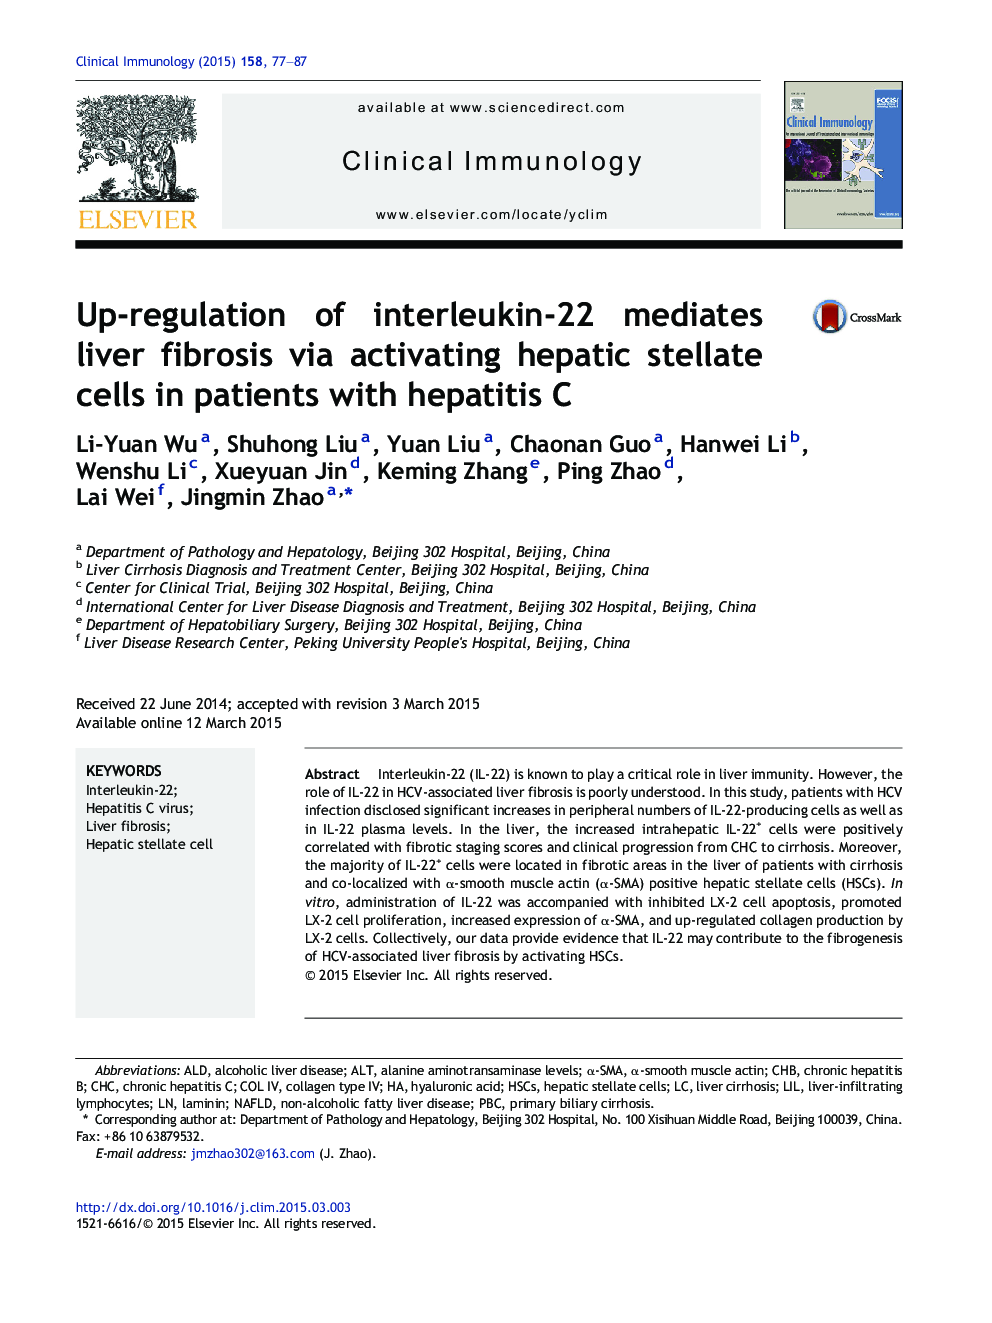 Up-regulation of interleukin-22 mediates liver fibrosis via activating hepatic stellate cells in patients with hepatitis C